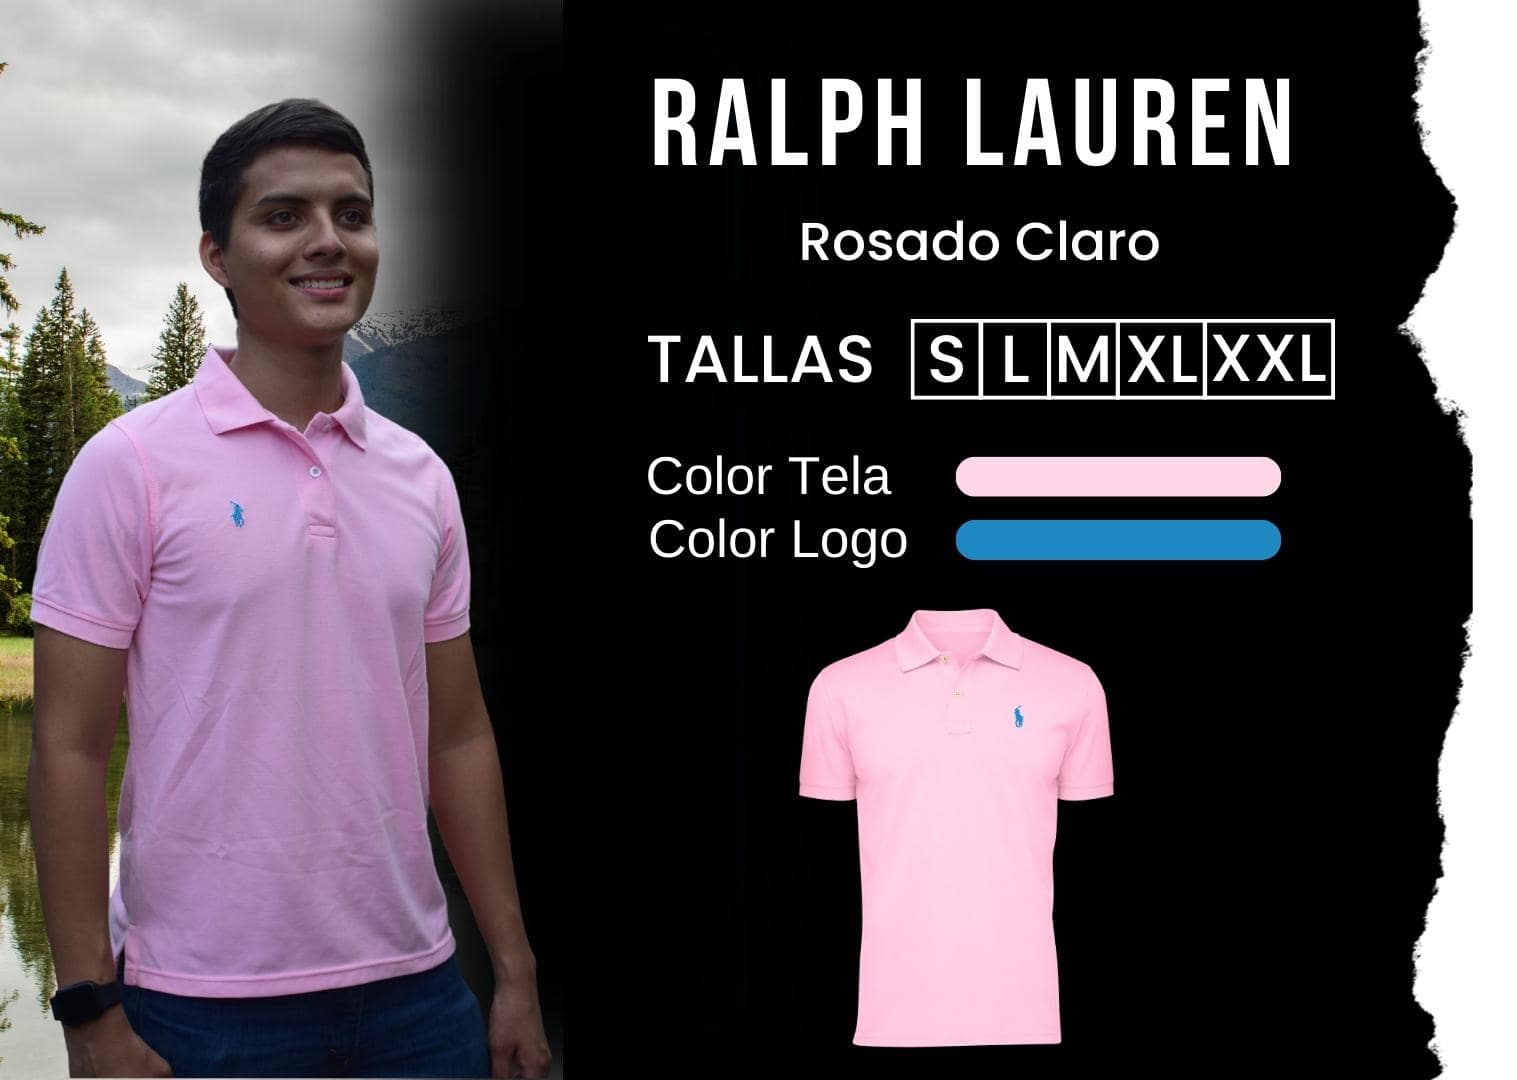 camiseta Ralph Lauren polo hombre tienda olevan color rosado claro